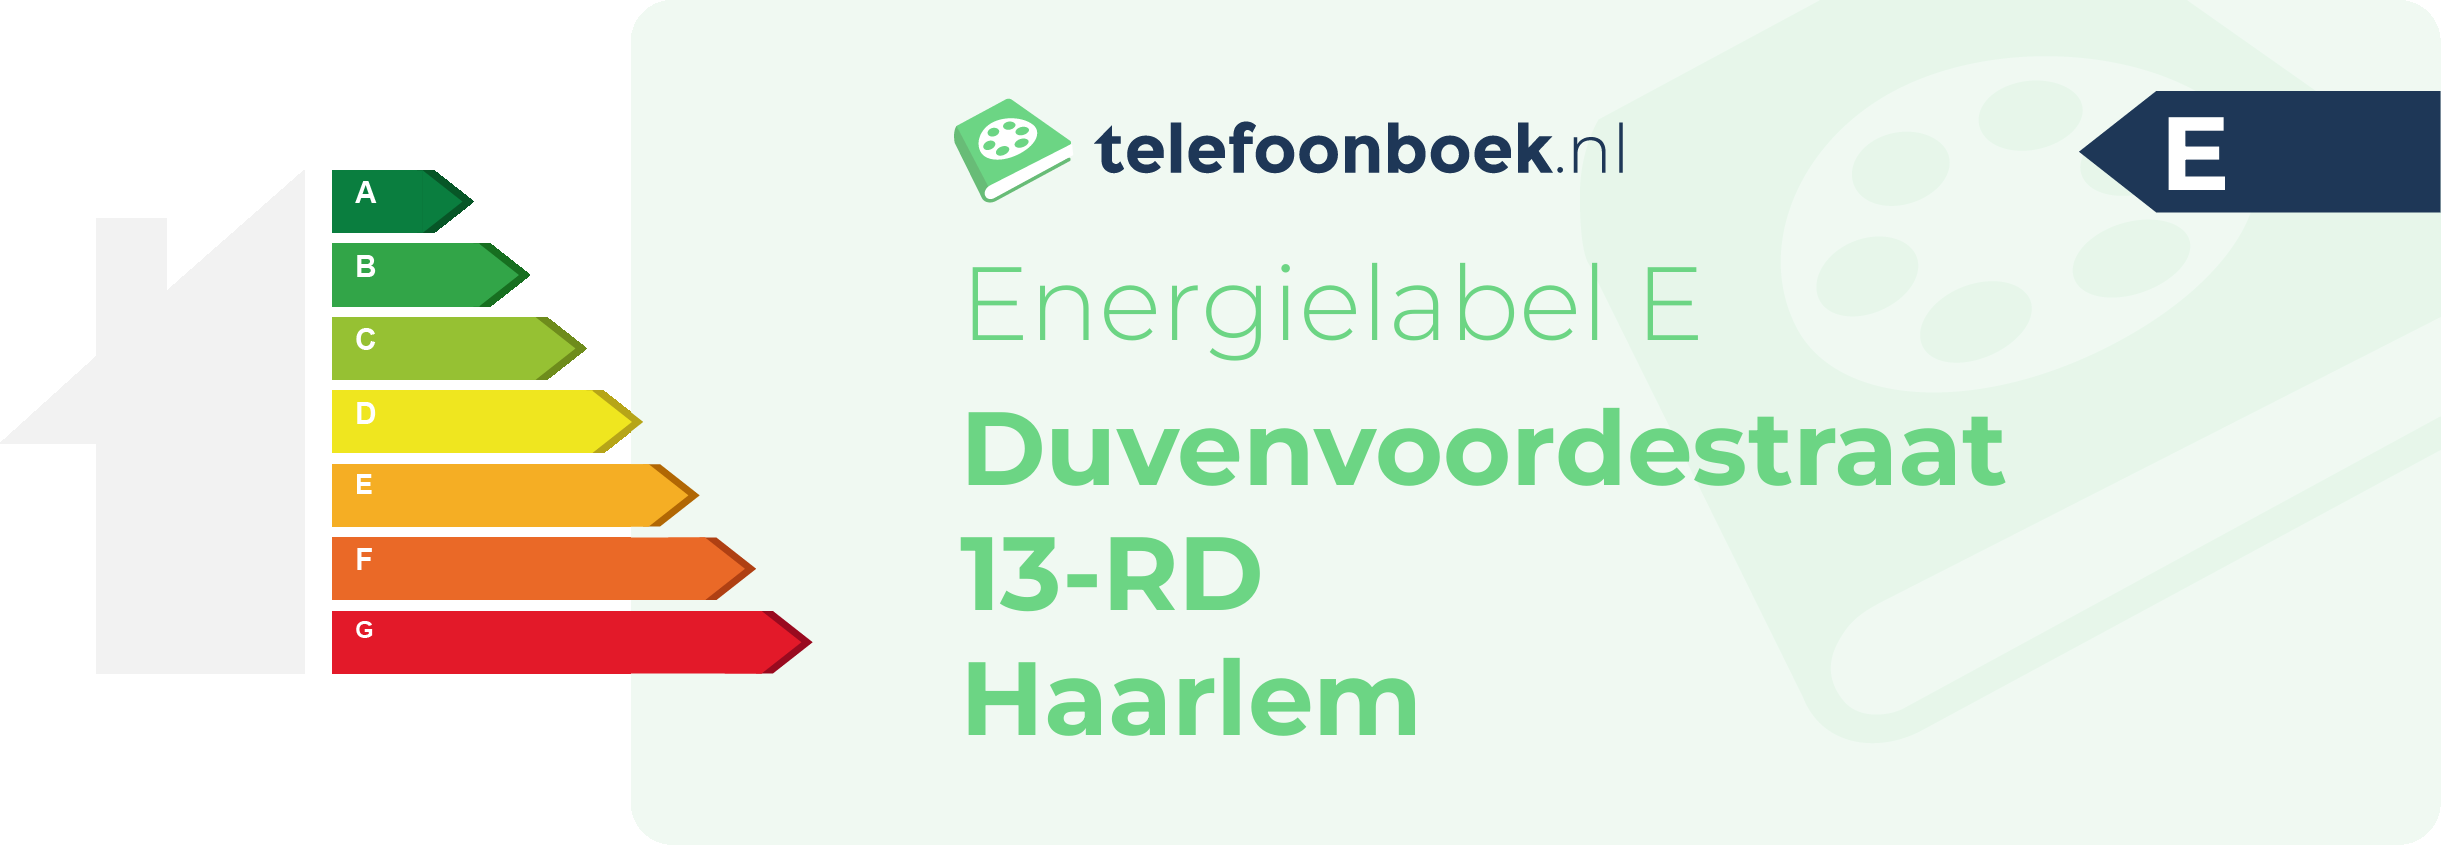 Energielabel Duvenvoordestraat 13-RD Haarlem